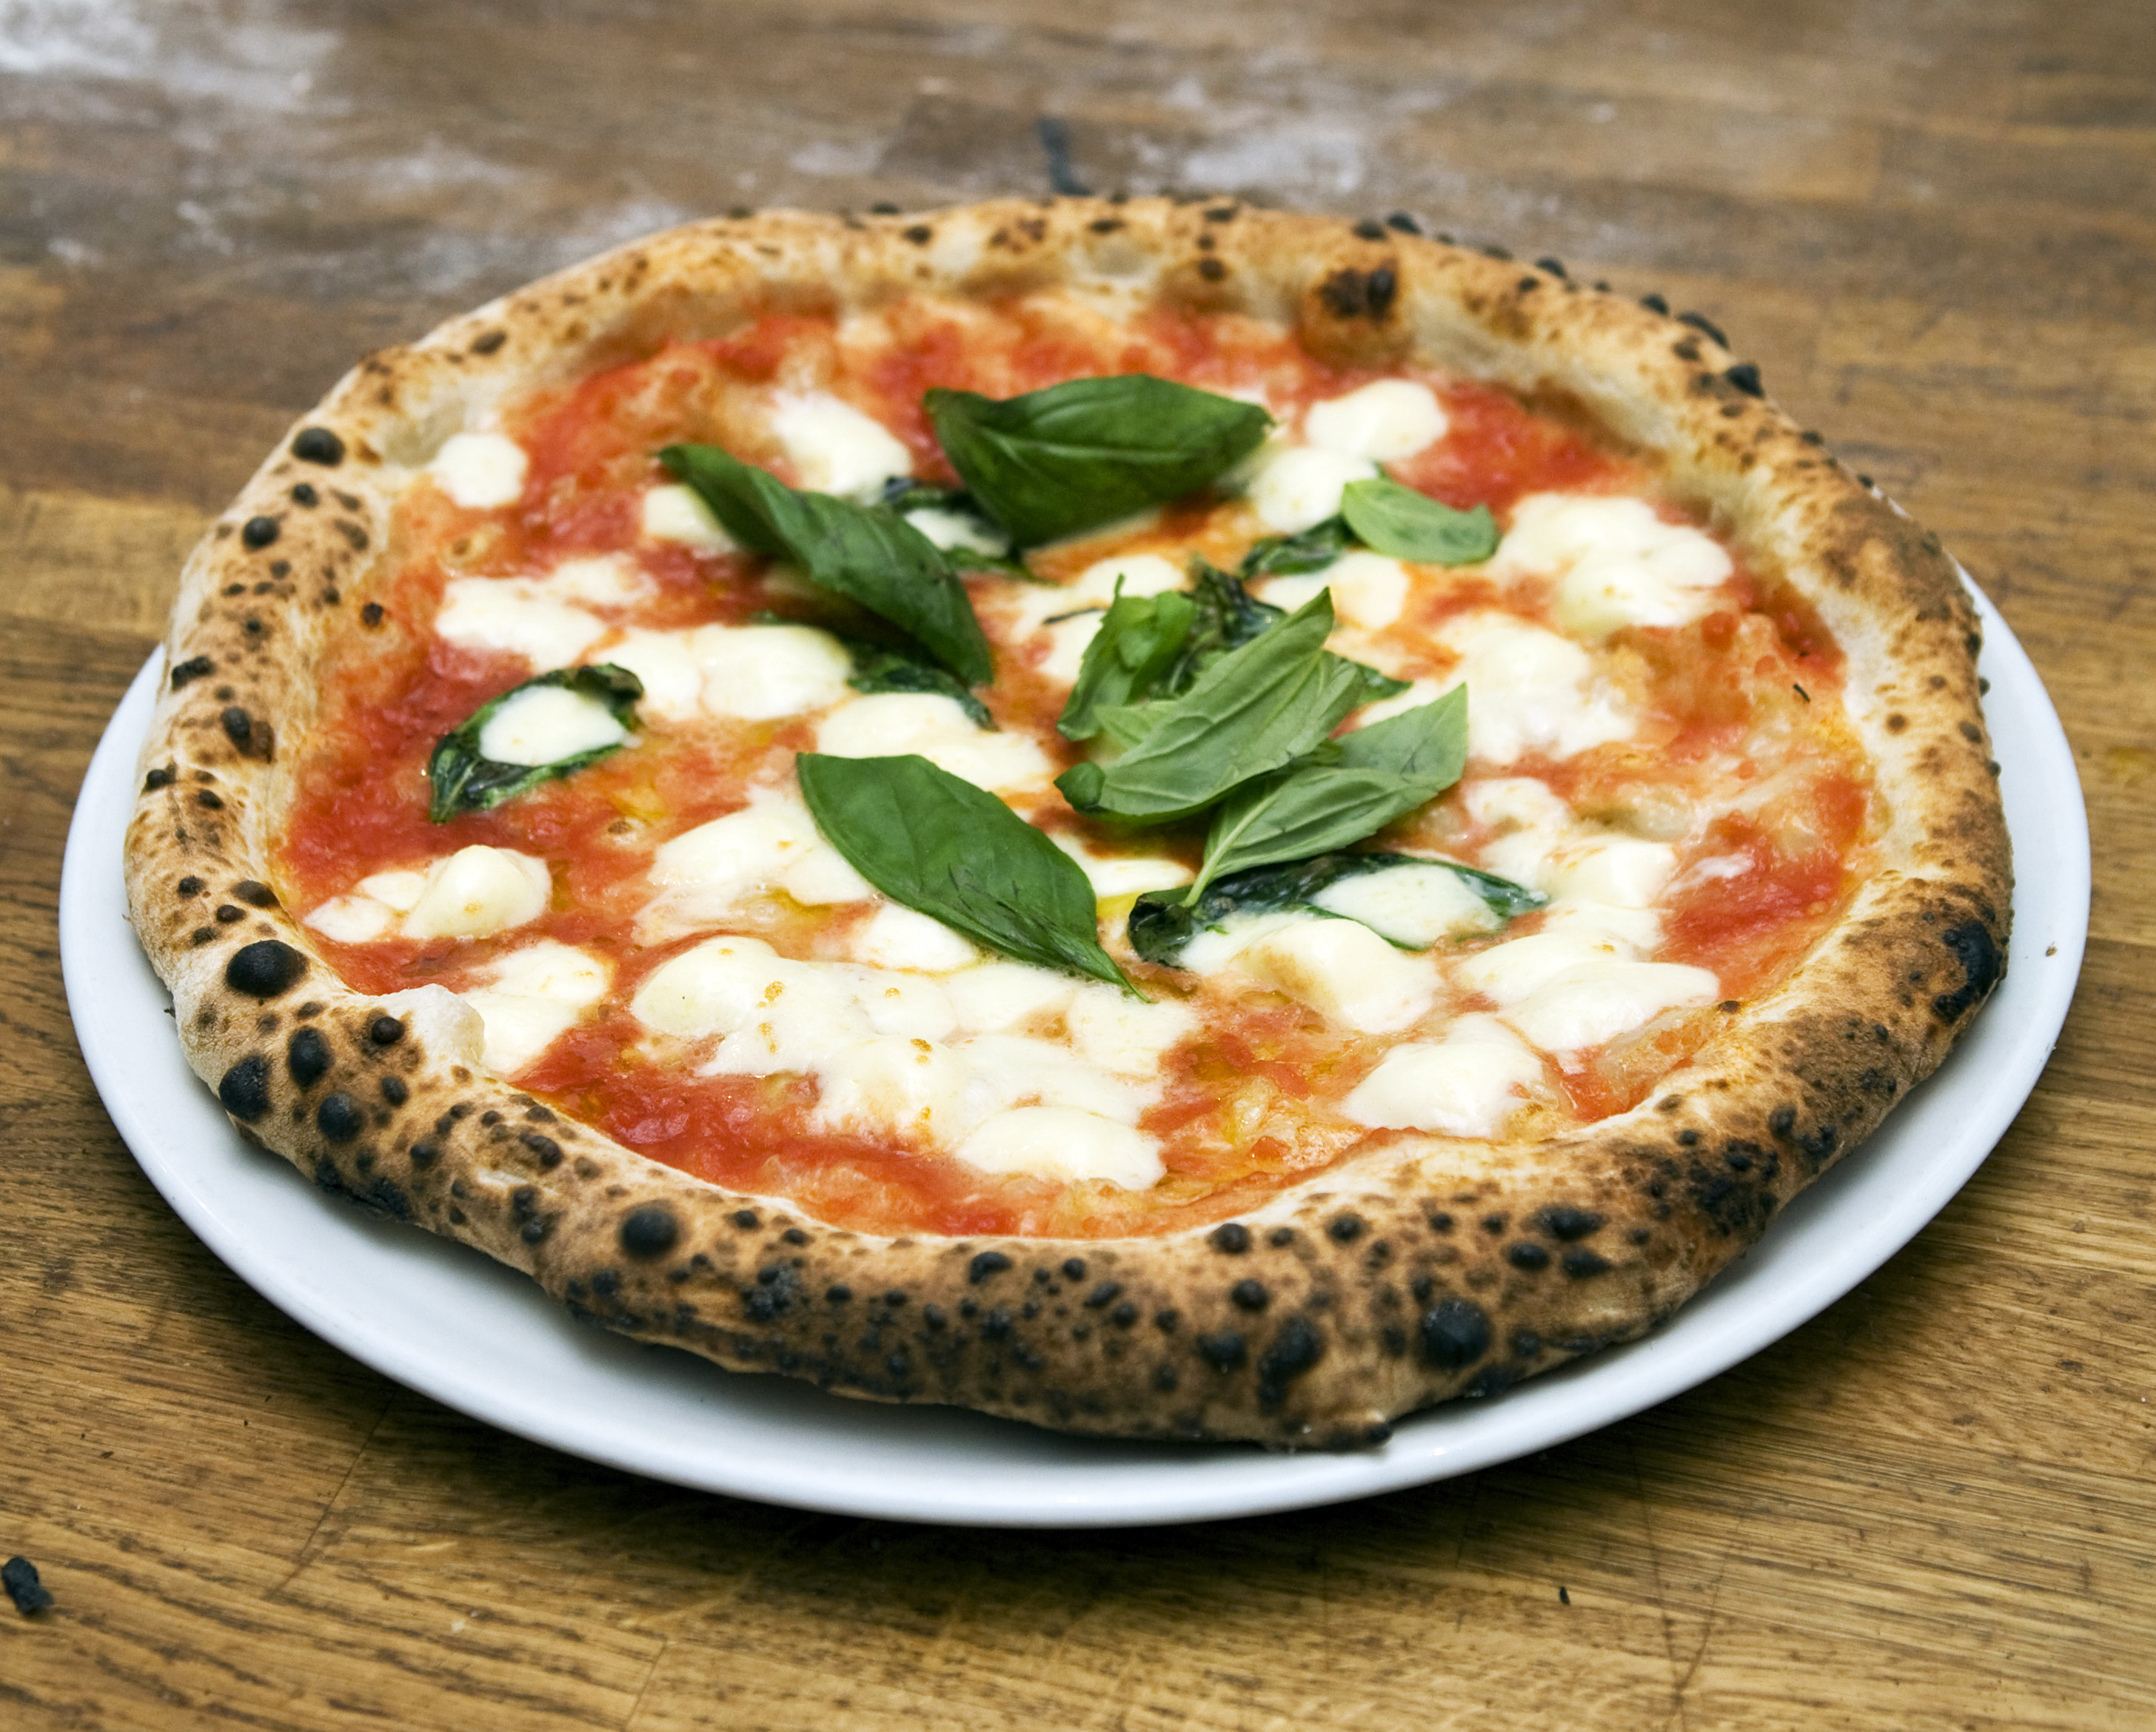 盘点2021年意大利人最爱的十种披萨口味 - 美食 - 丽意生活-国内首家倡导意大利生活方式的时尚网站